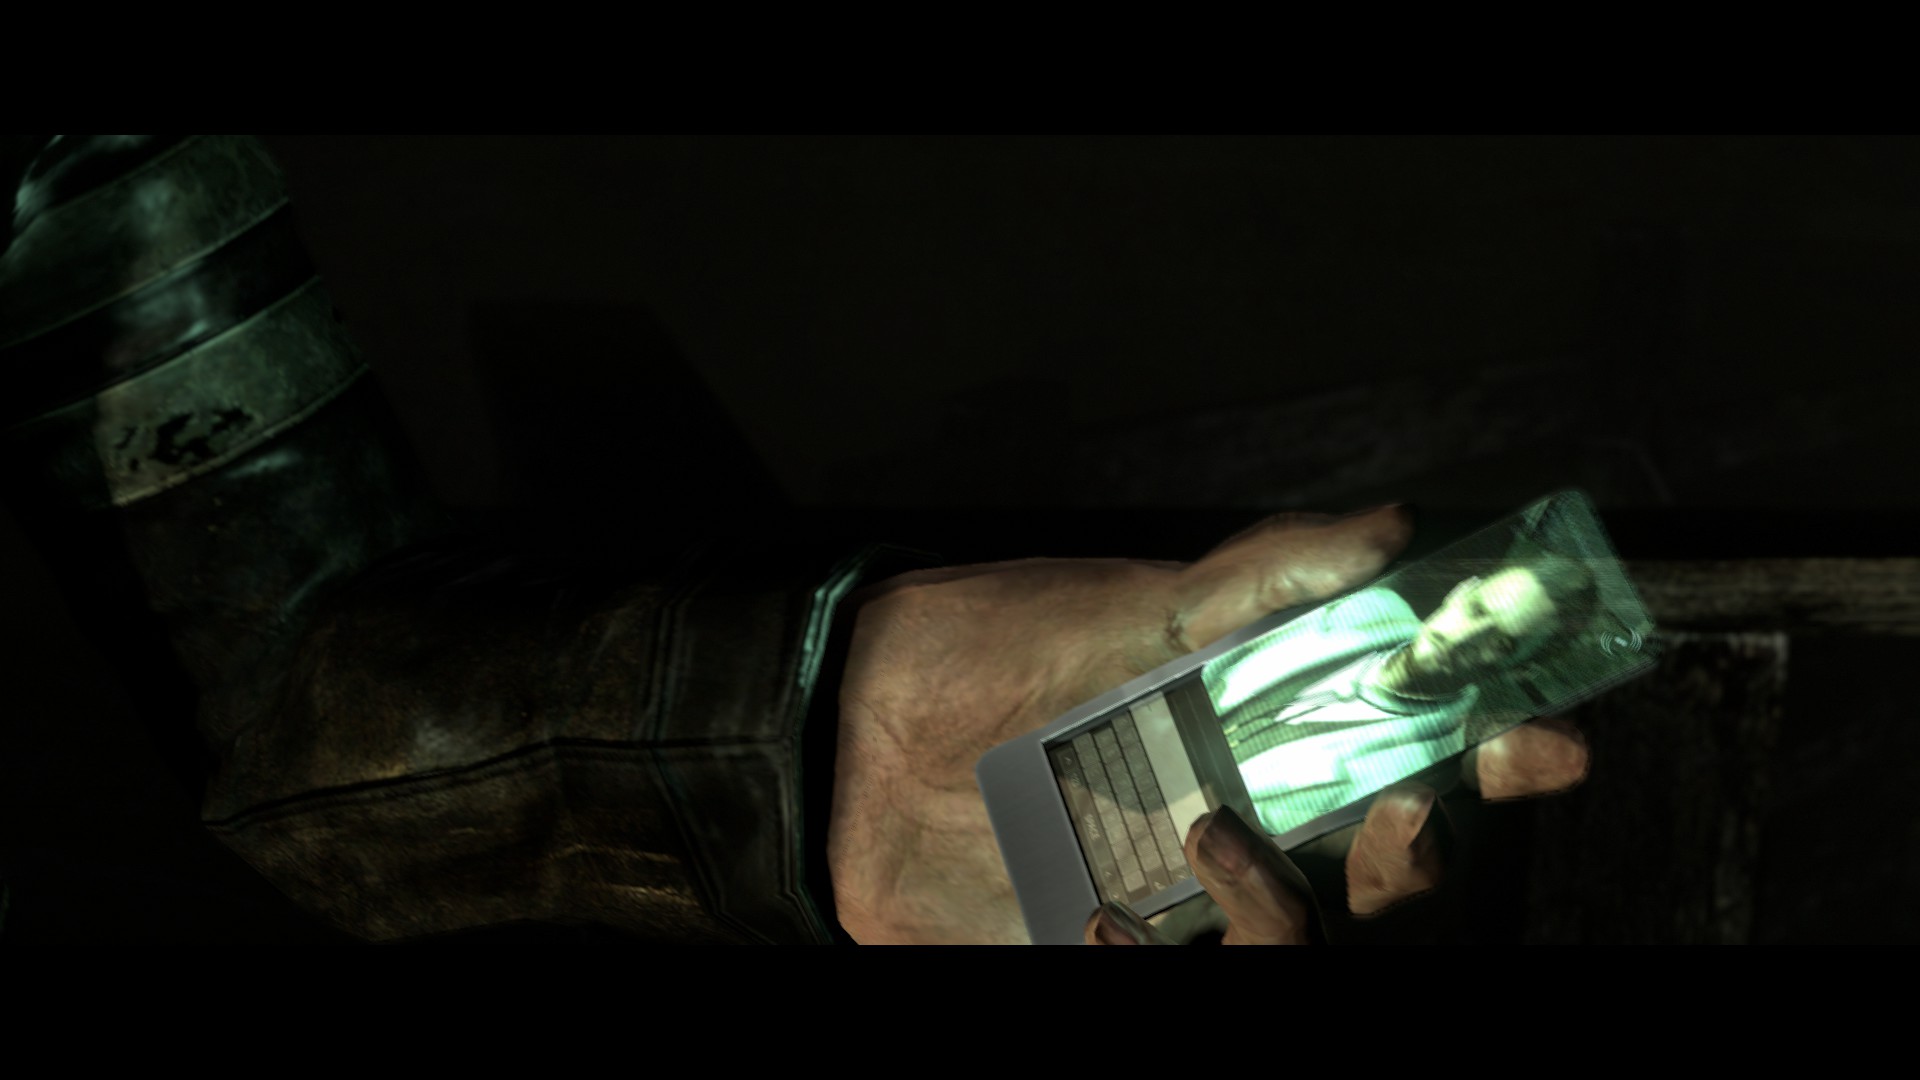 Download mobile wallpaper Resident Evil 6, Resident Evil, Video Game for free.